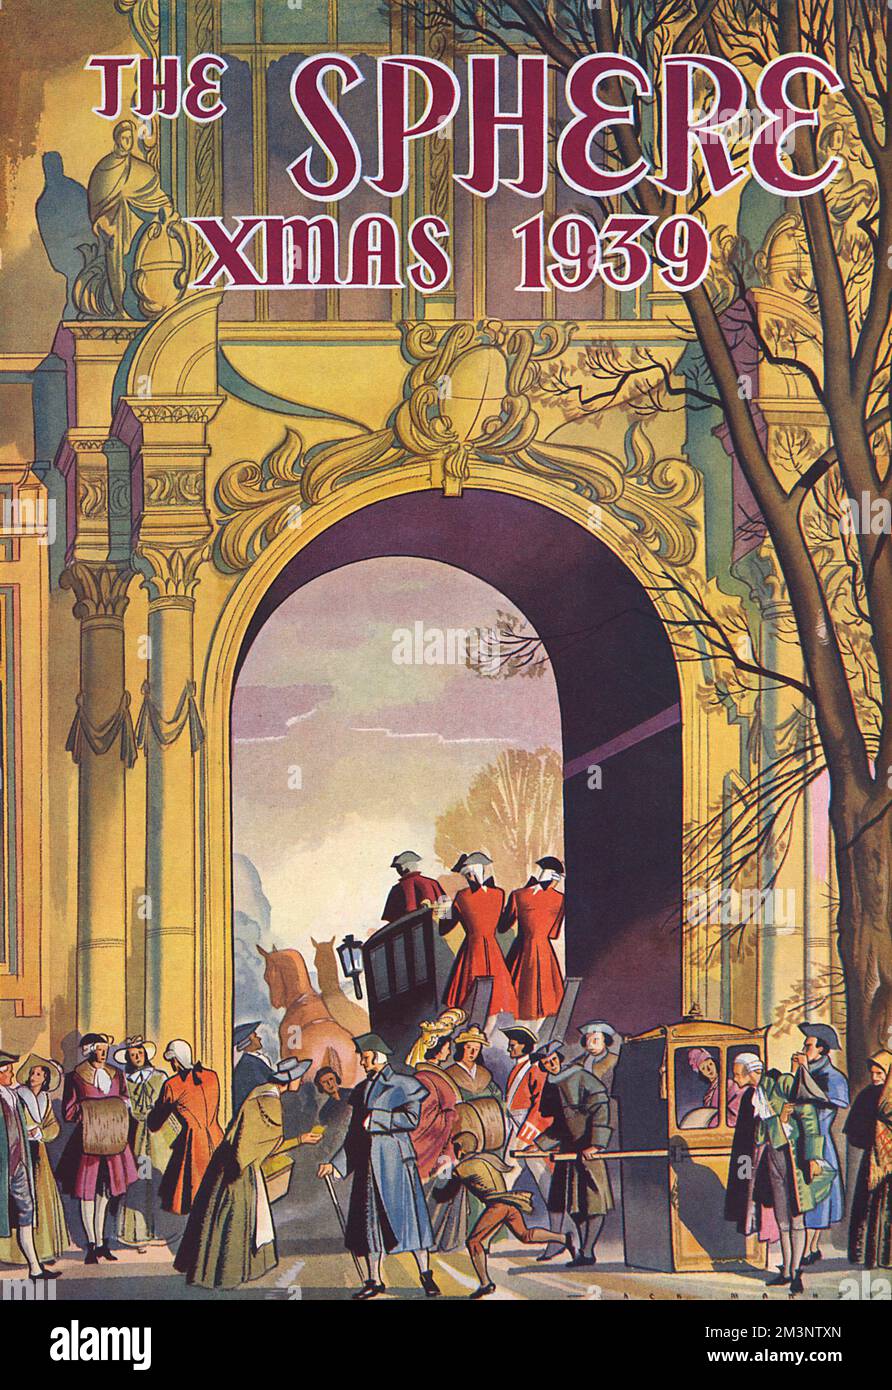 Innenbezug der Kugel Weihnachten Nr. 1939 mit einer Szene aus dem 18.. Jahrhundert mit Reisebussen, Sesseln und verschiedenen Menschen, die sich durch einen Zierbogen bewegen. Datum: 1939 Stockfoto